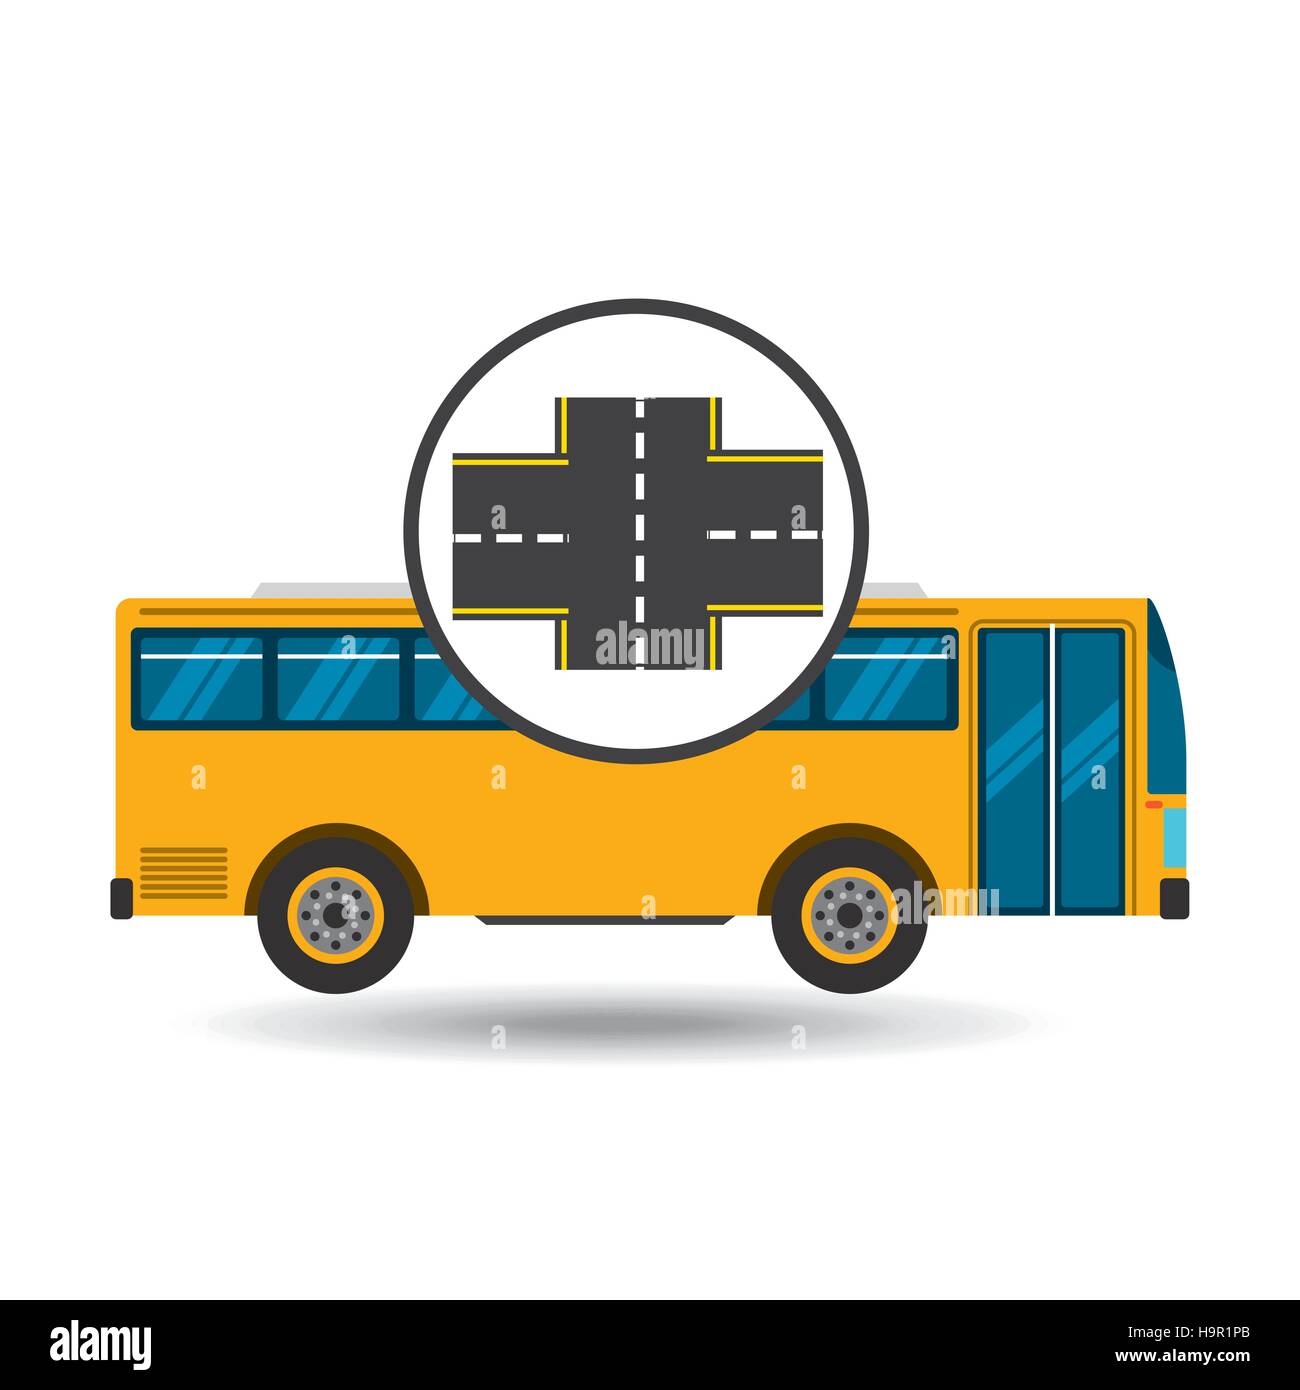 bus transport public cross road vector illustration eps 10 Stock Vector